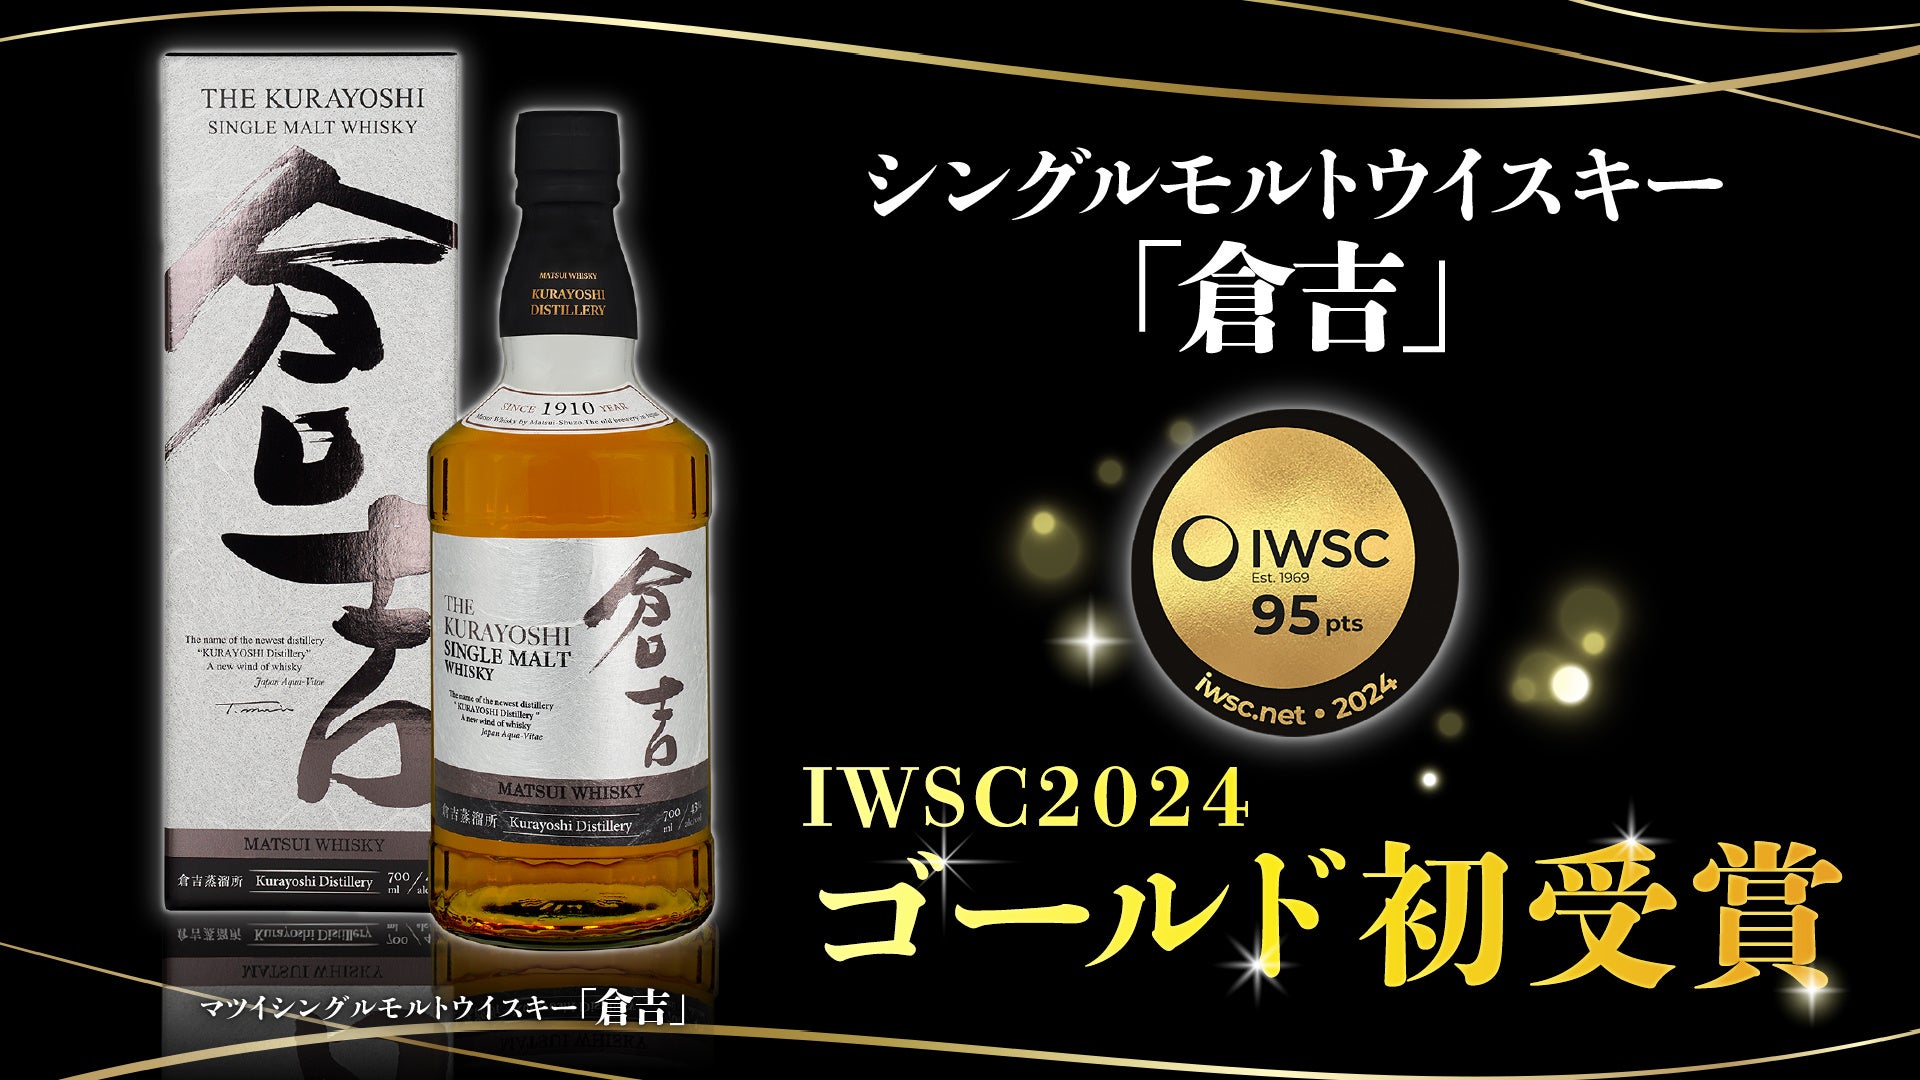 マツイシングルモルトウイスキー「倉吉」がイギリスで開催された「IWSC2024」においてゴールドを受賞！